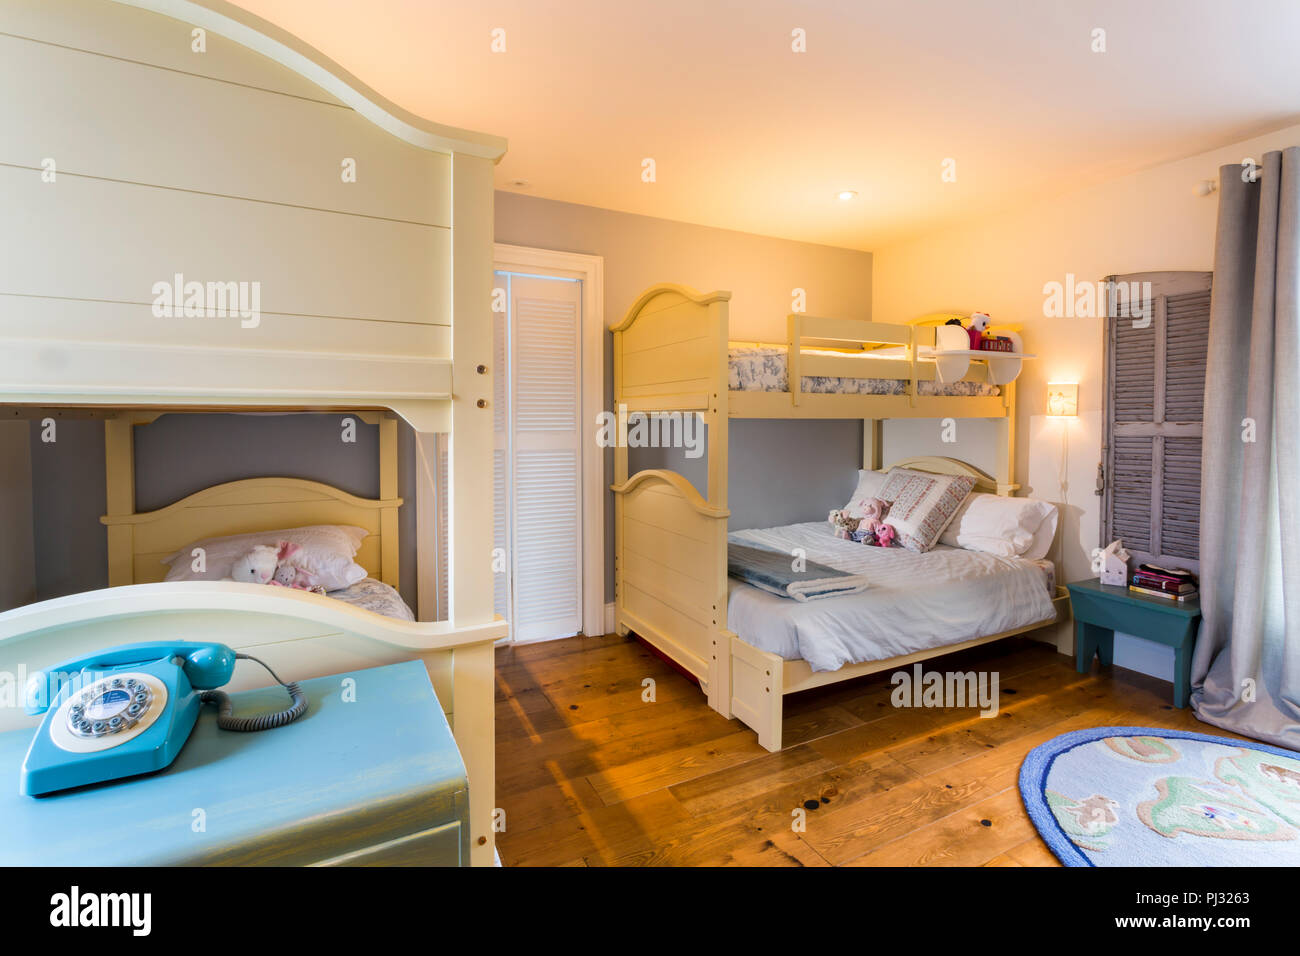 children s bedroom with bunk beds Stock Photo